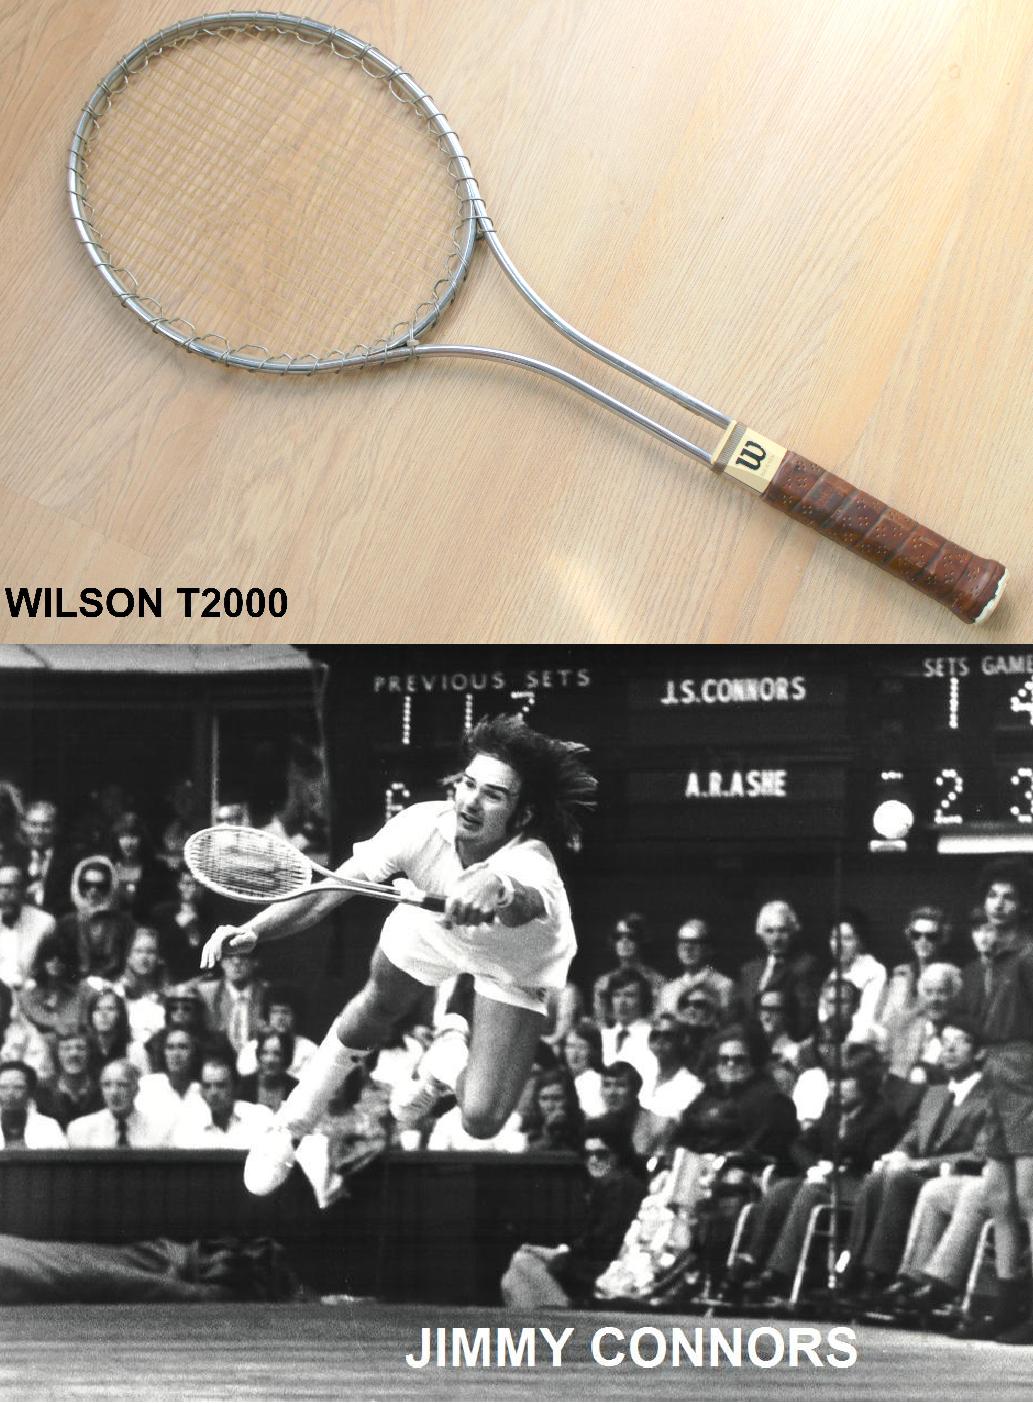 Historia de las raquetas de tenis: todas las curiosidades